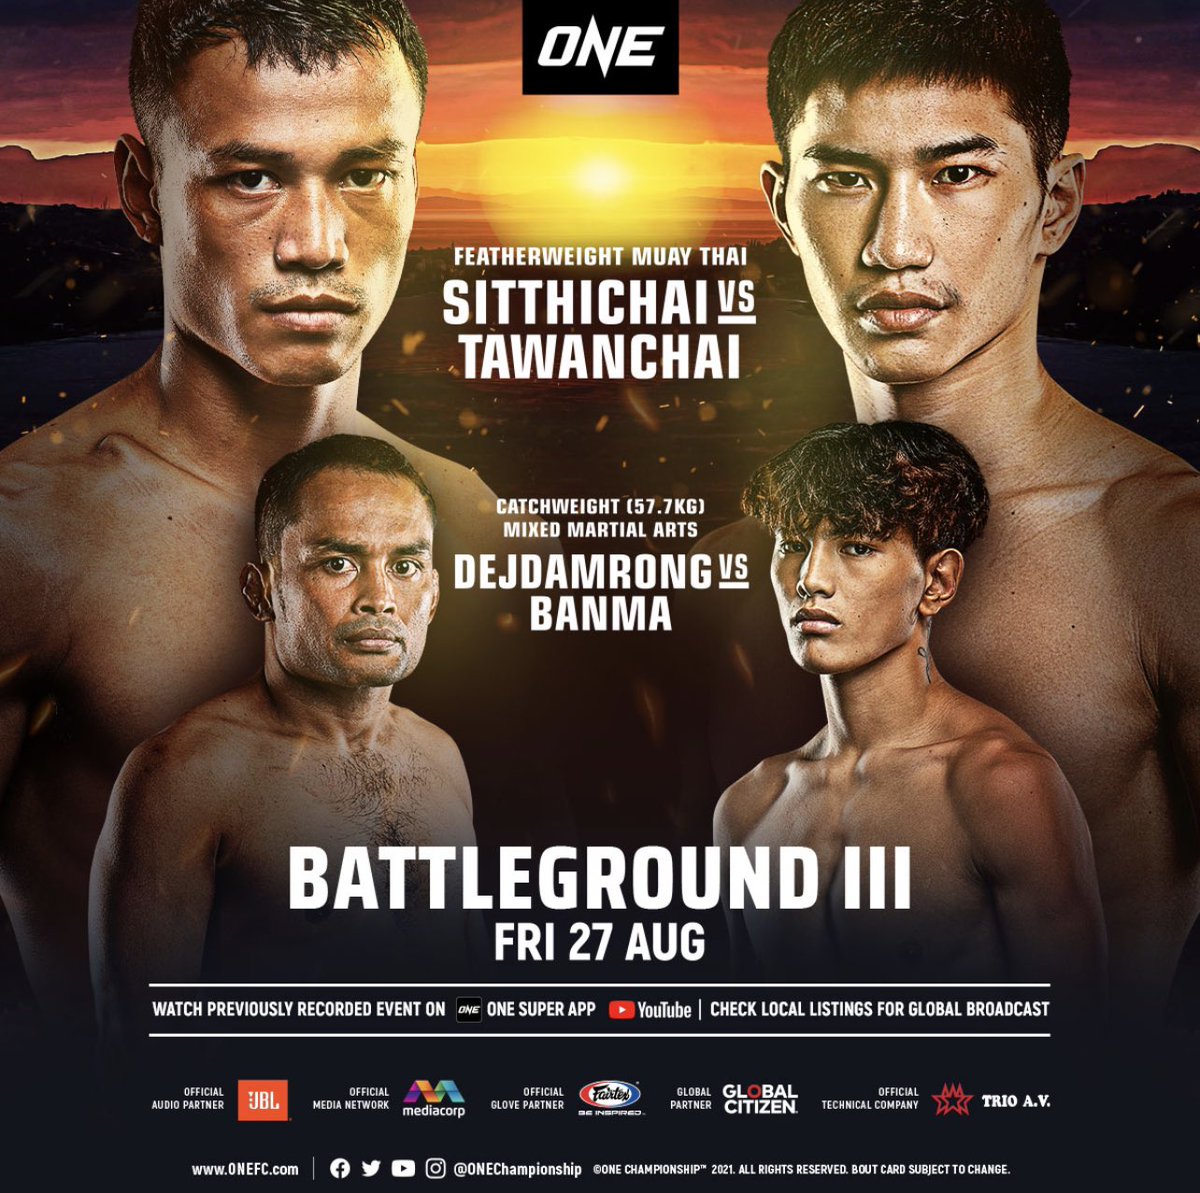 ONE - Battleground III poster